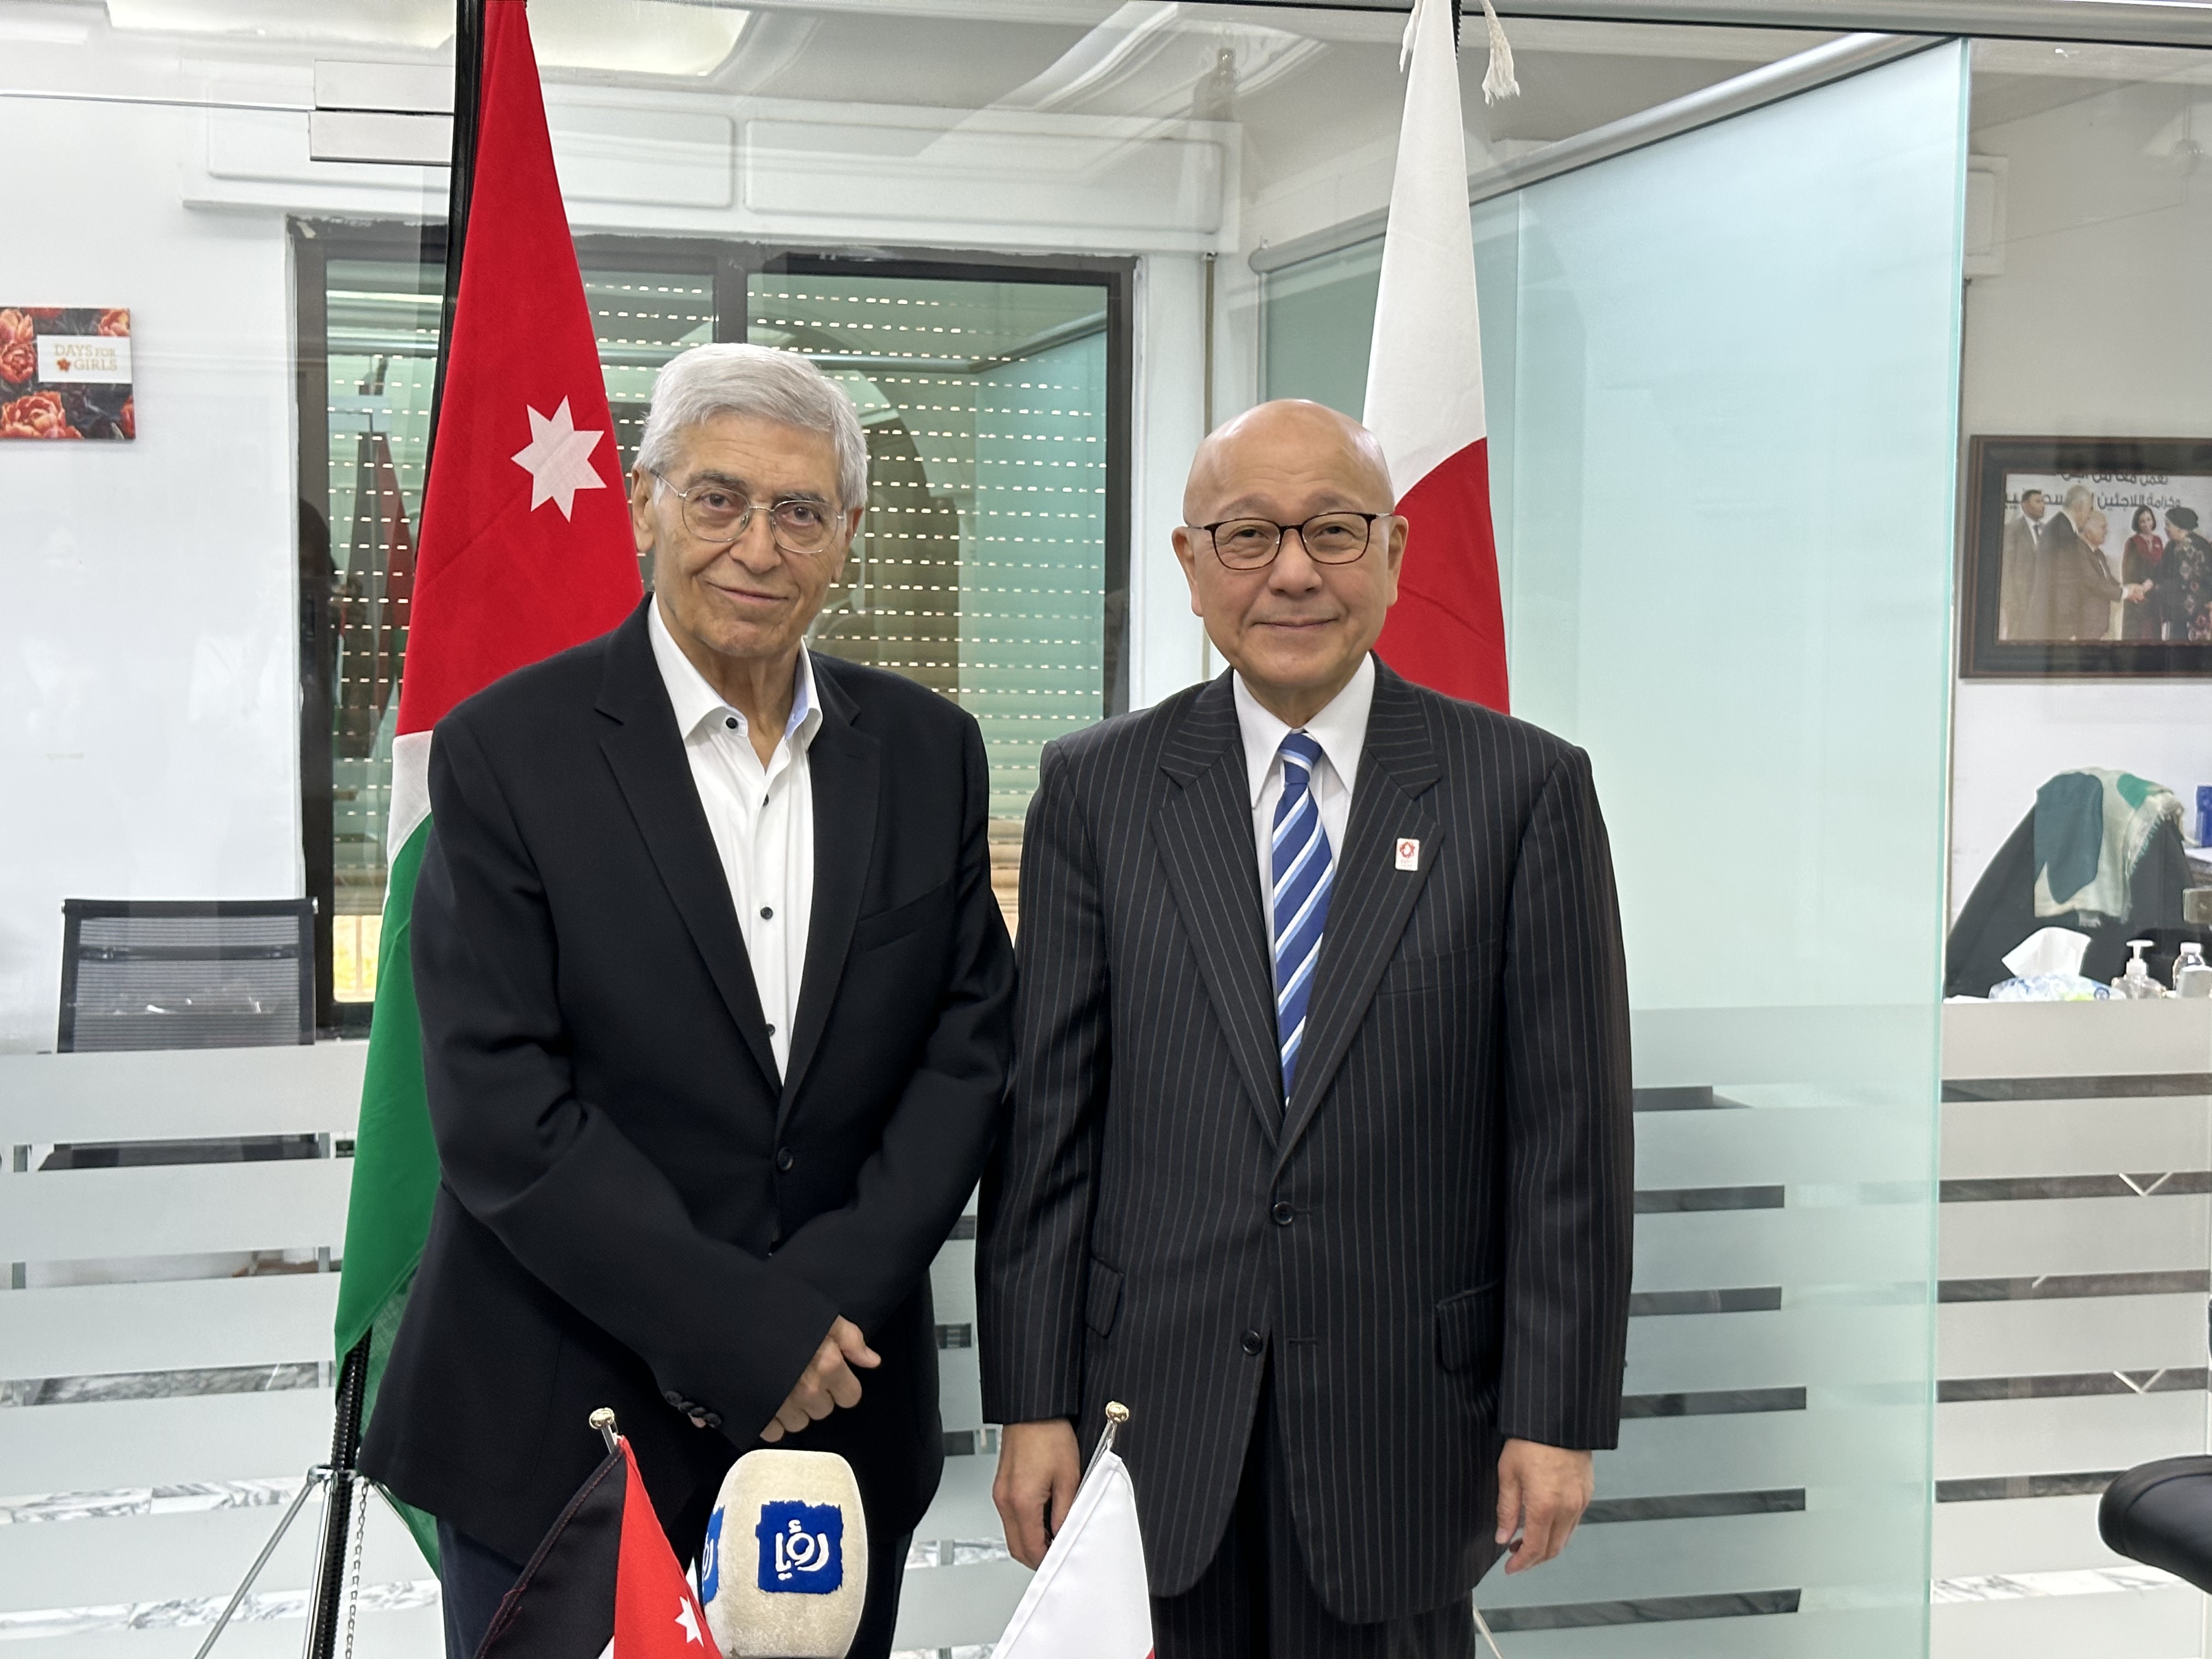 توقيع عقد منحة من الحكومة اليابانية  بقيمة 65،677 دولار أمريكي لتوفير معدات طبية للجمعية الاردنية للعون الطبي للفلسطينيين